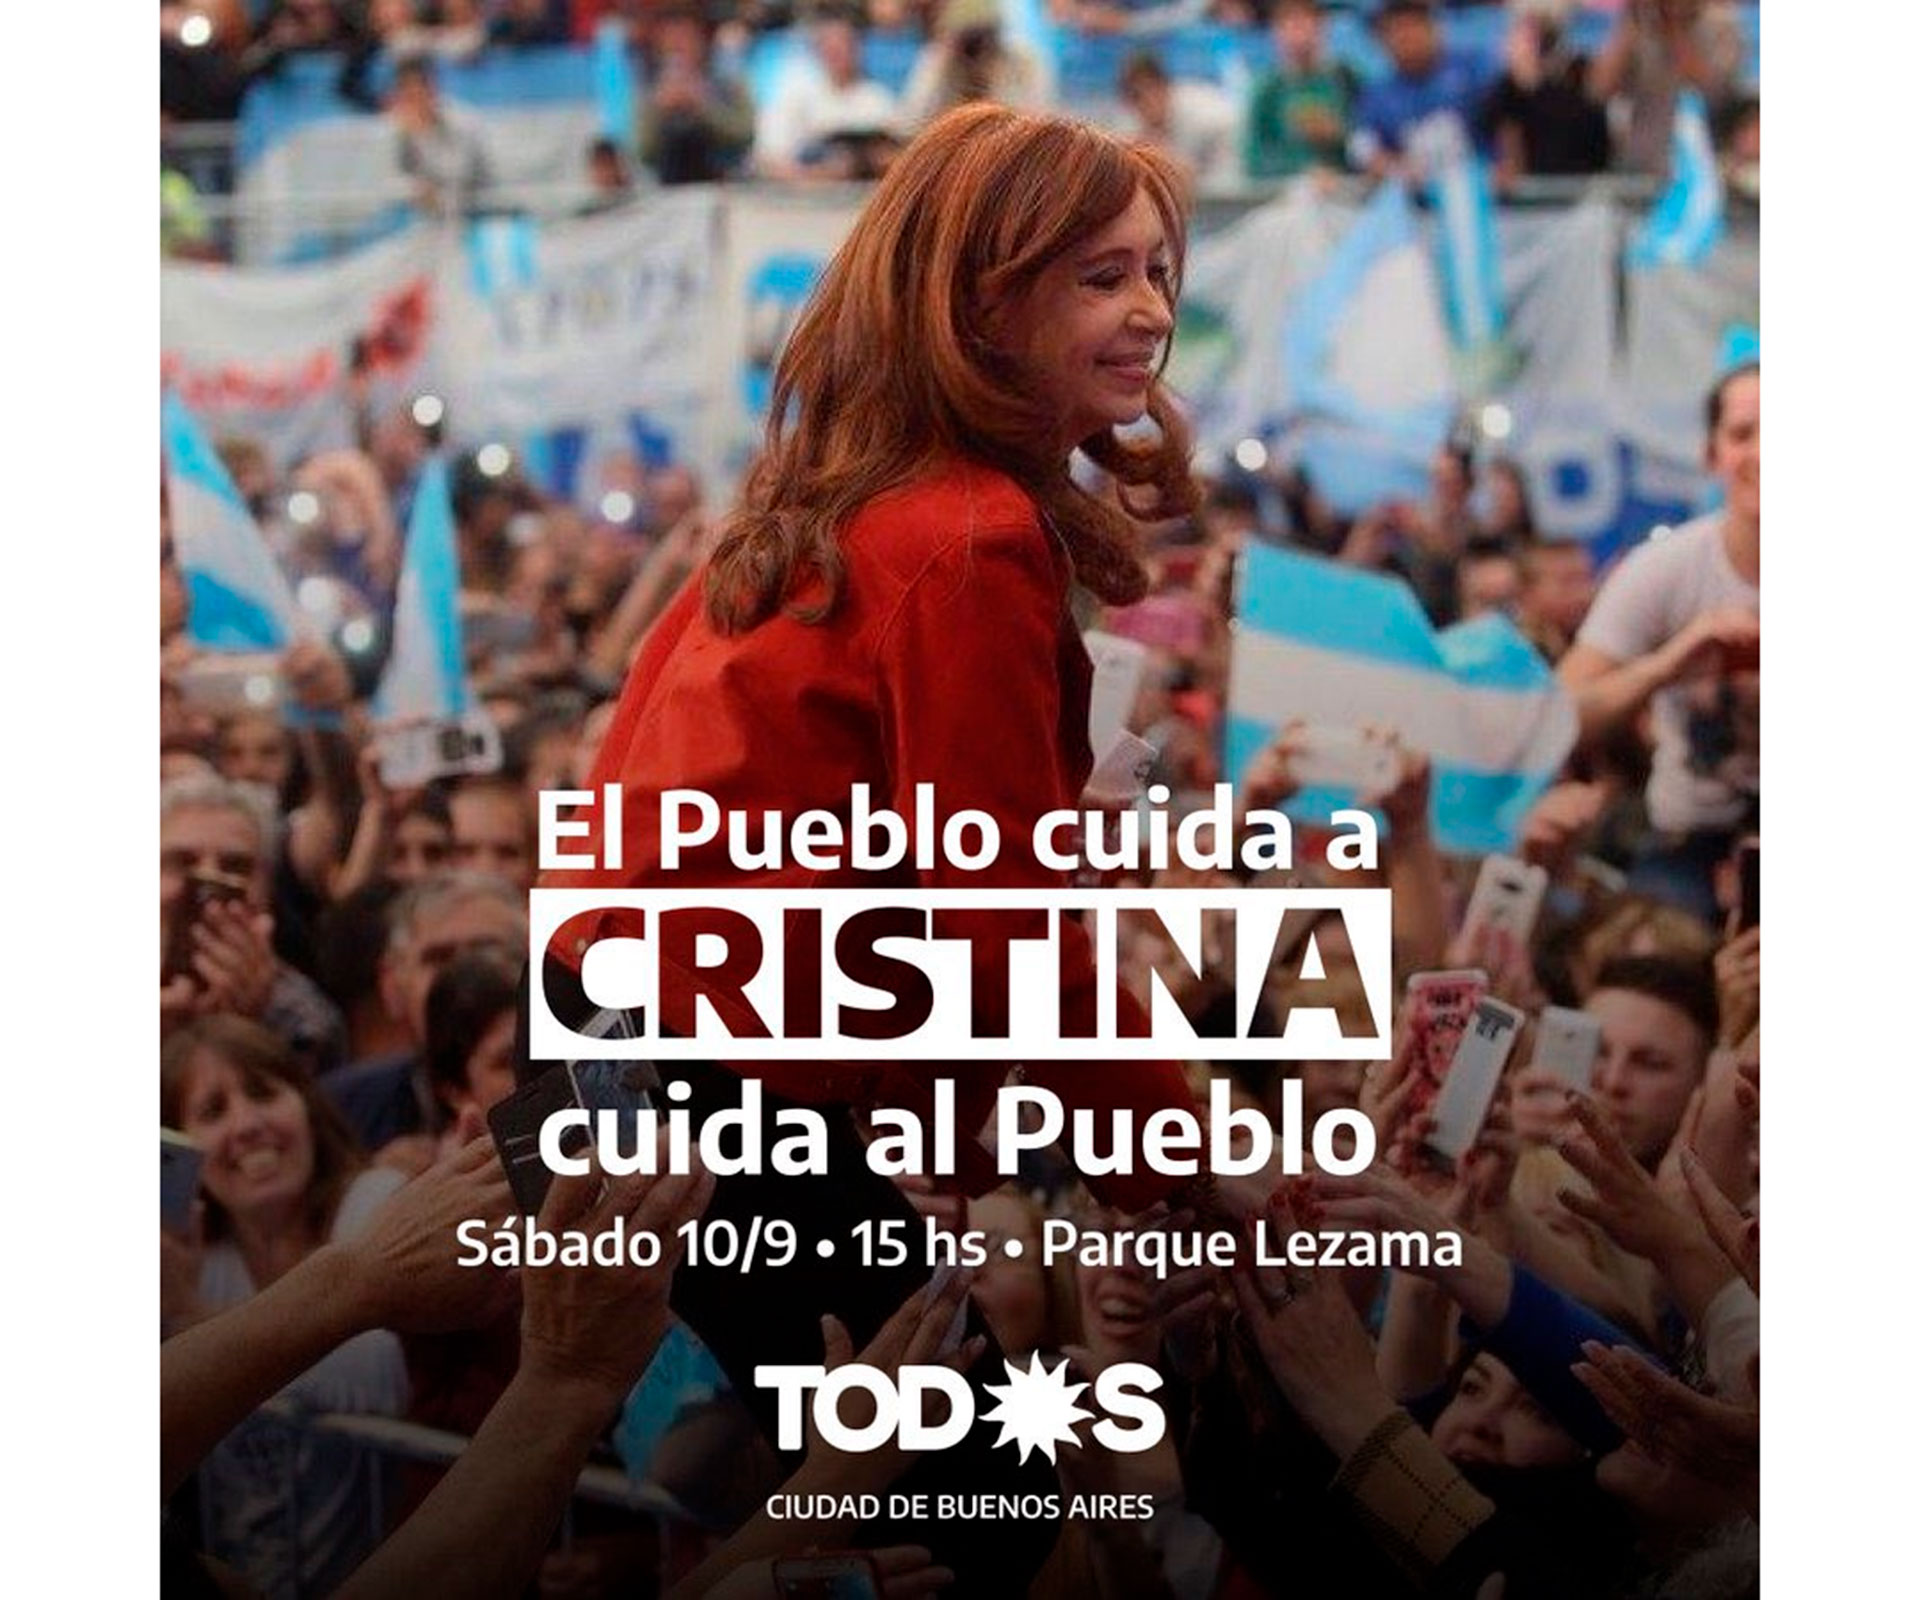 El Frente de Todos también hizo una convocatoria a una marcha en Parque Lezama por Cristina Kirchner el próximo sábado